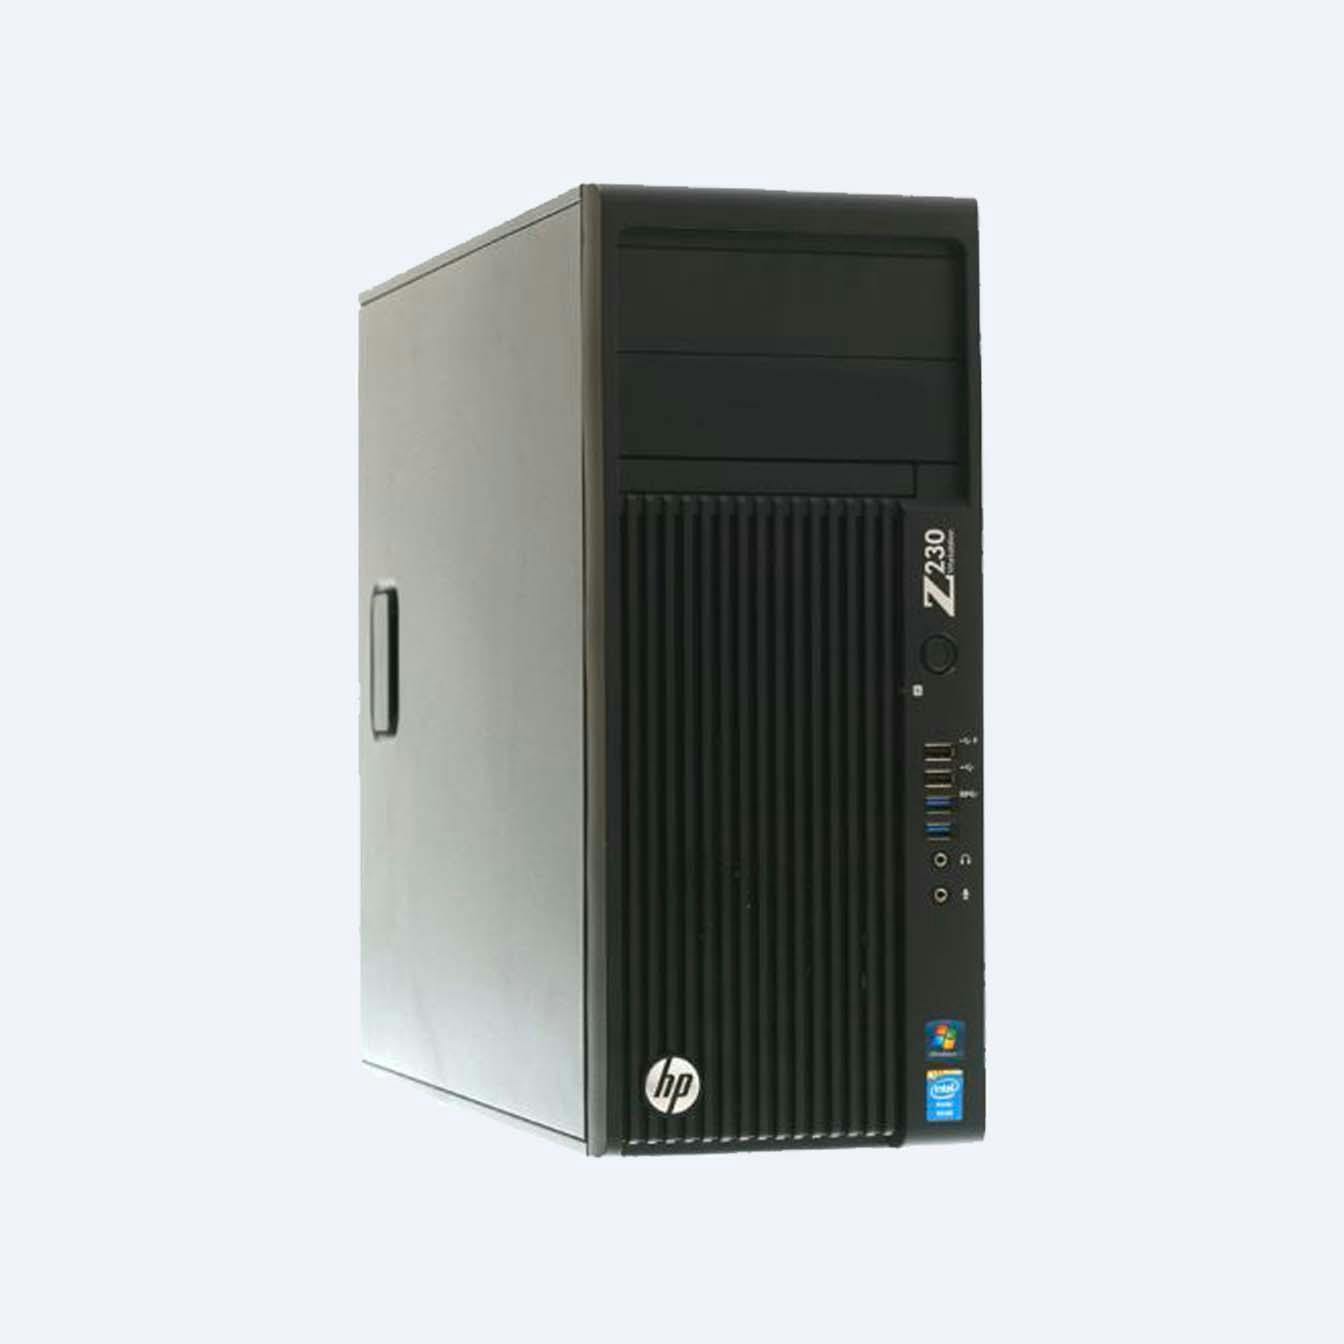 Workstation PC HPz230 i5 Tower